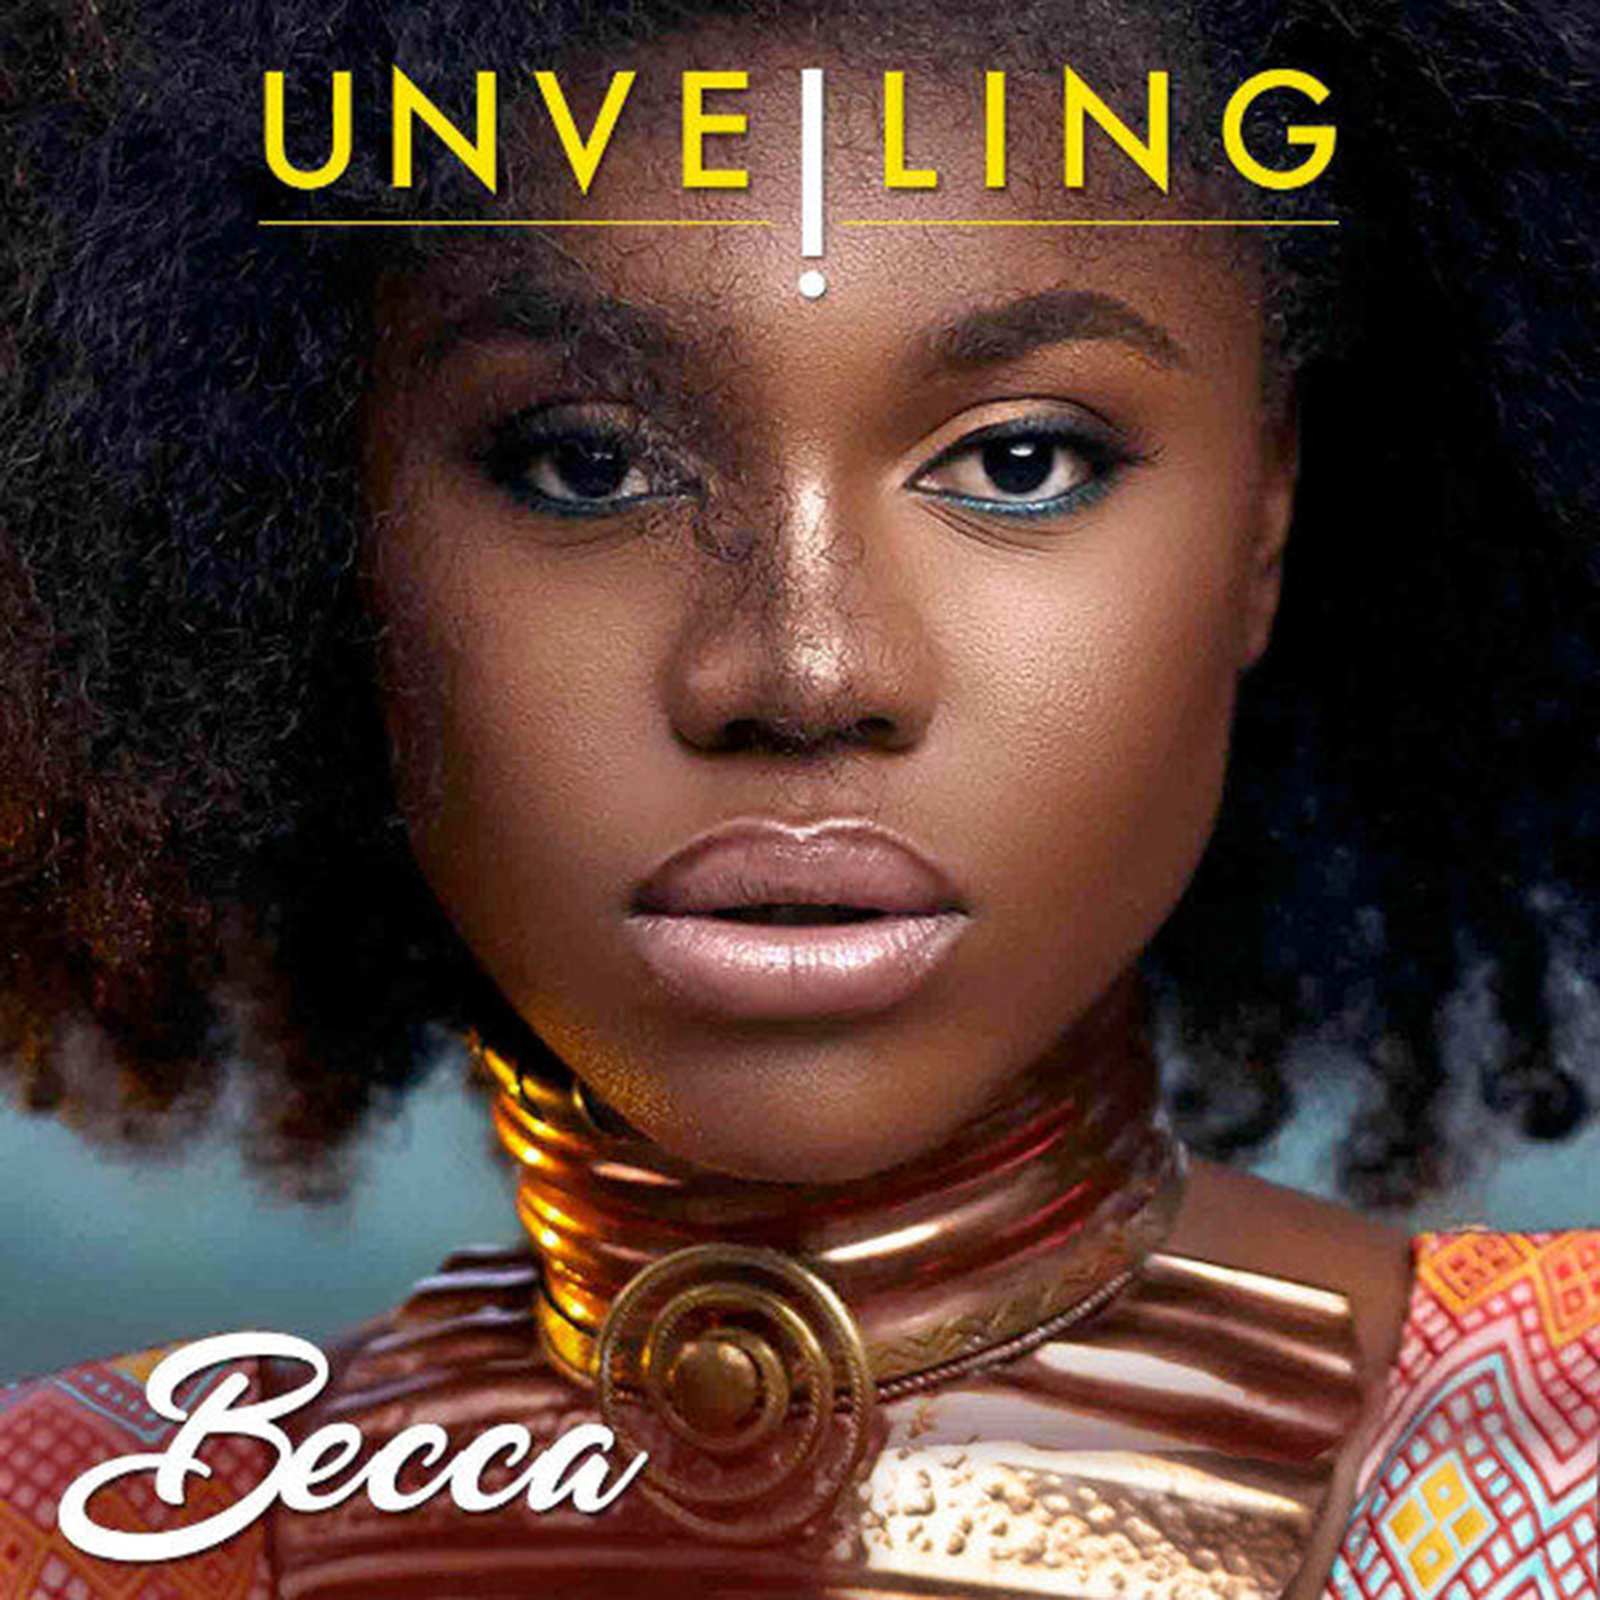 Album Review: We unveil Becca's Unveiling album